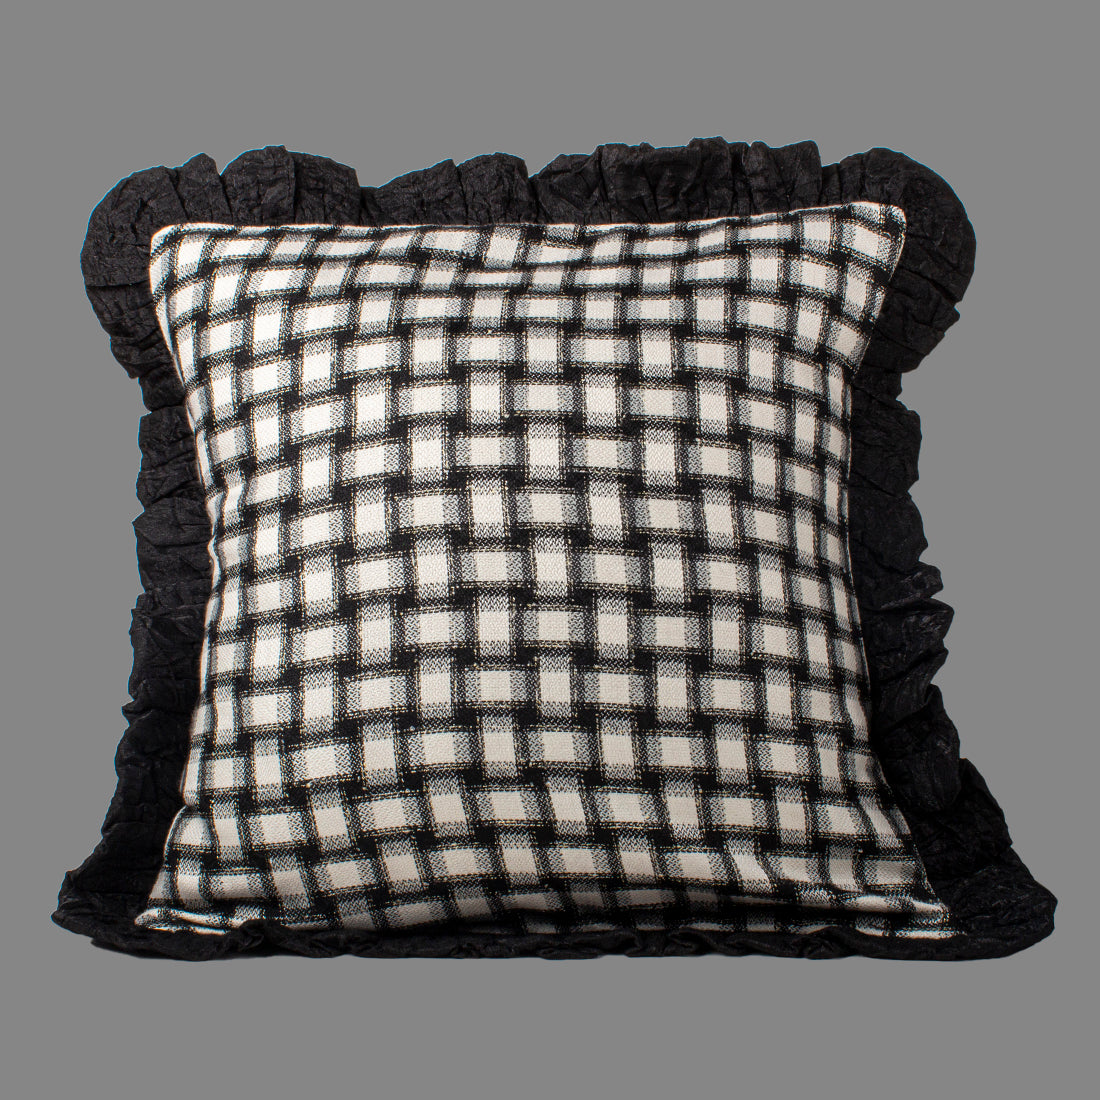 Cushion Cover-Black n White Checks